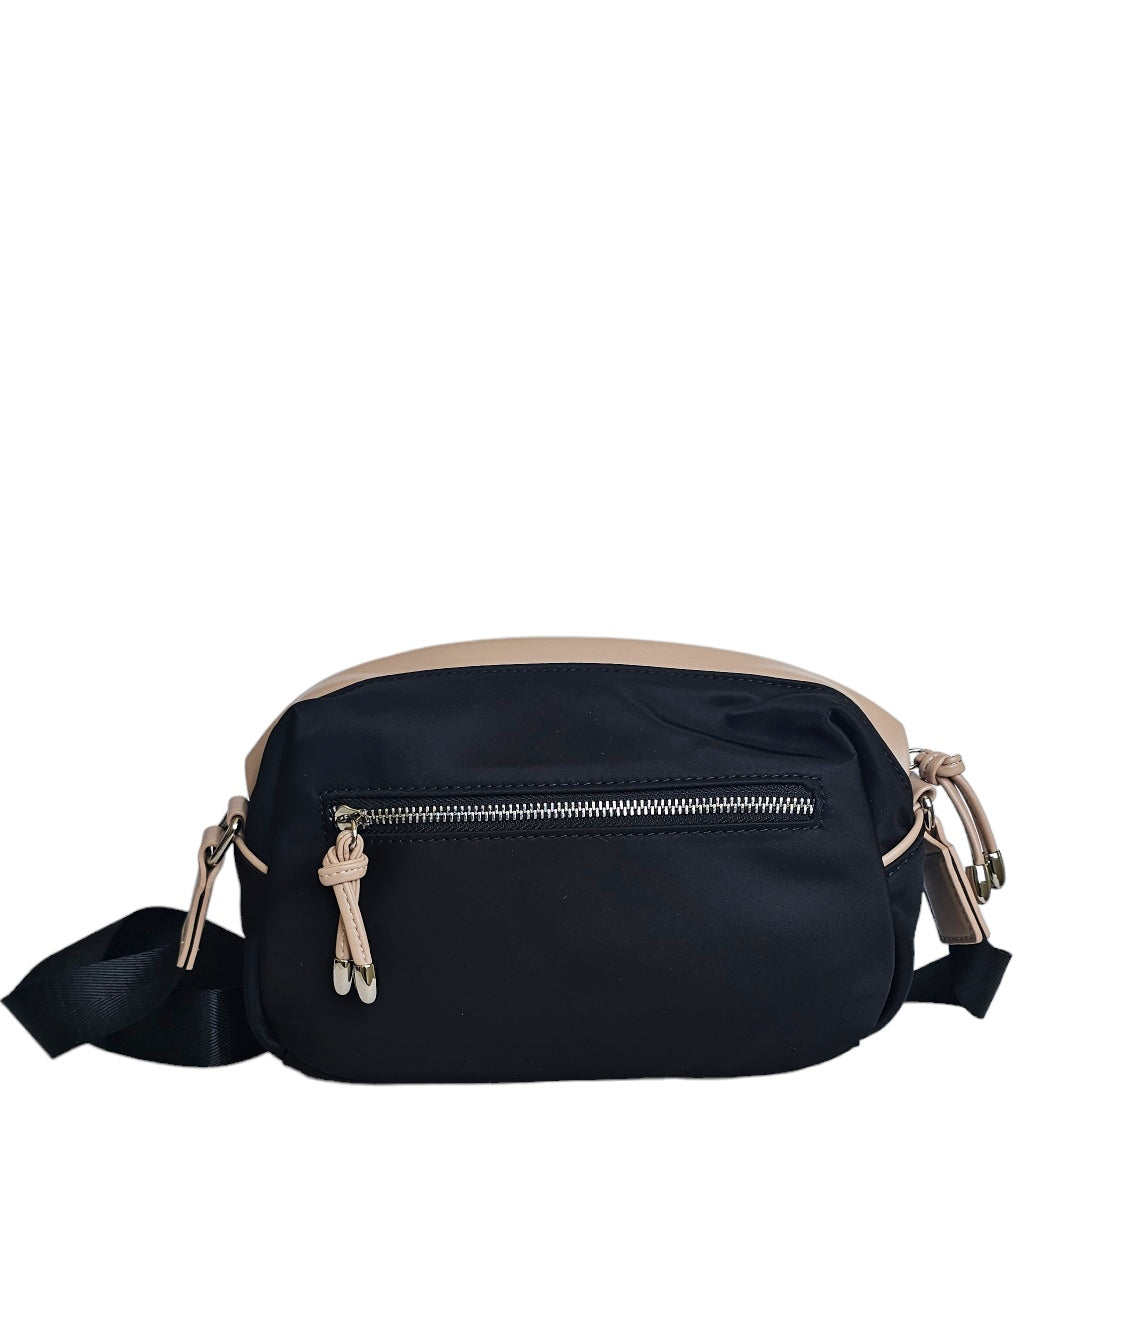 recycled nylon crossbody bag black | Mavis by Herrera